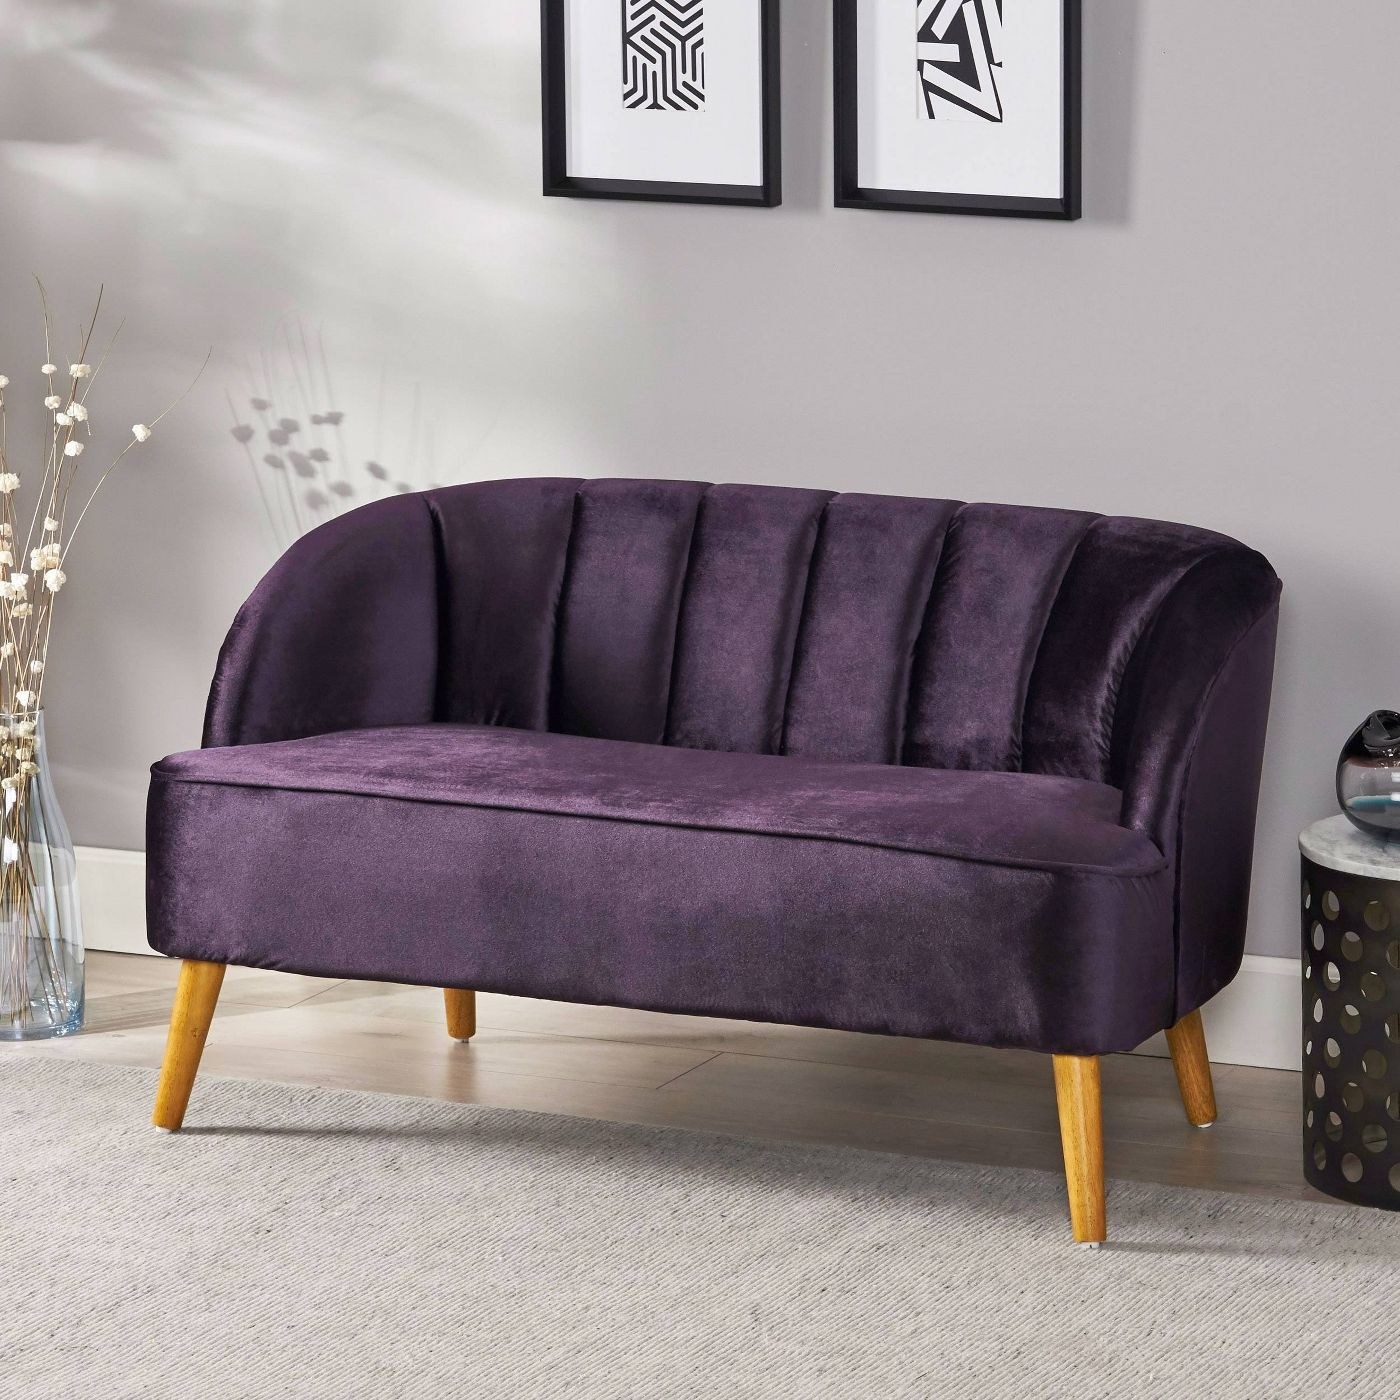 Purple velvet settee in a living room.